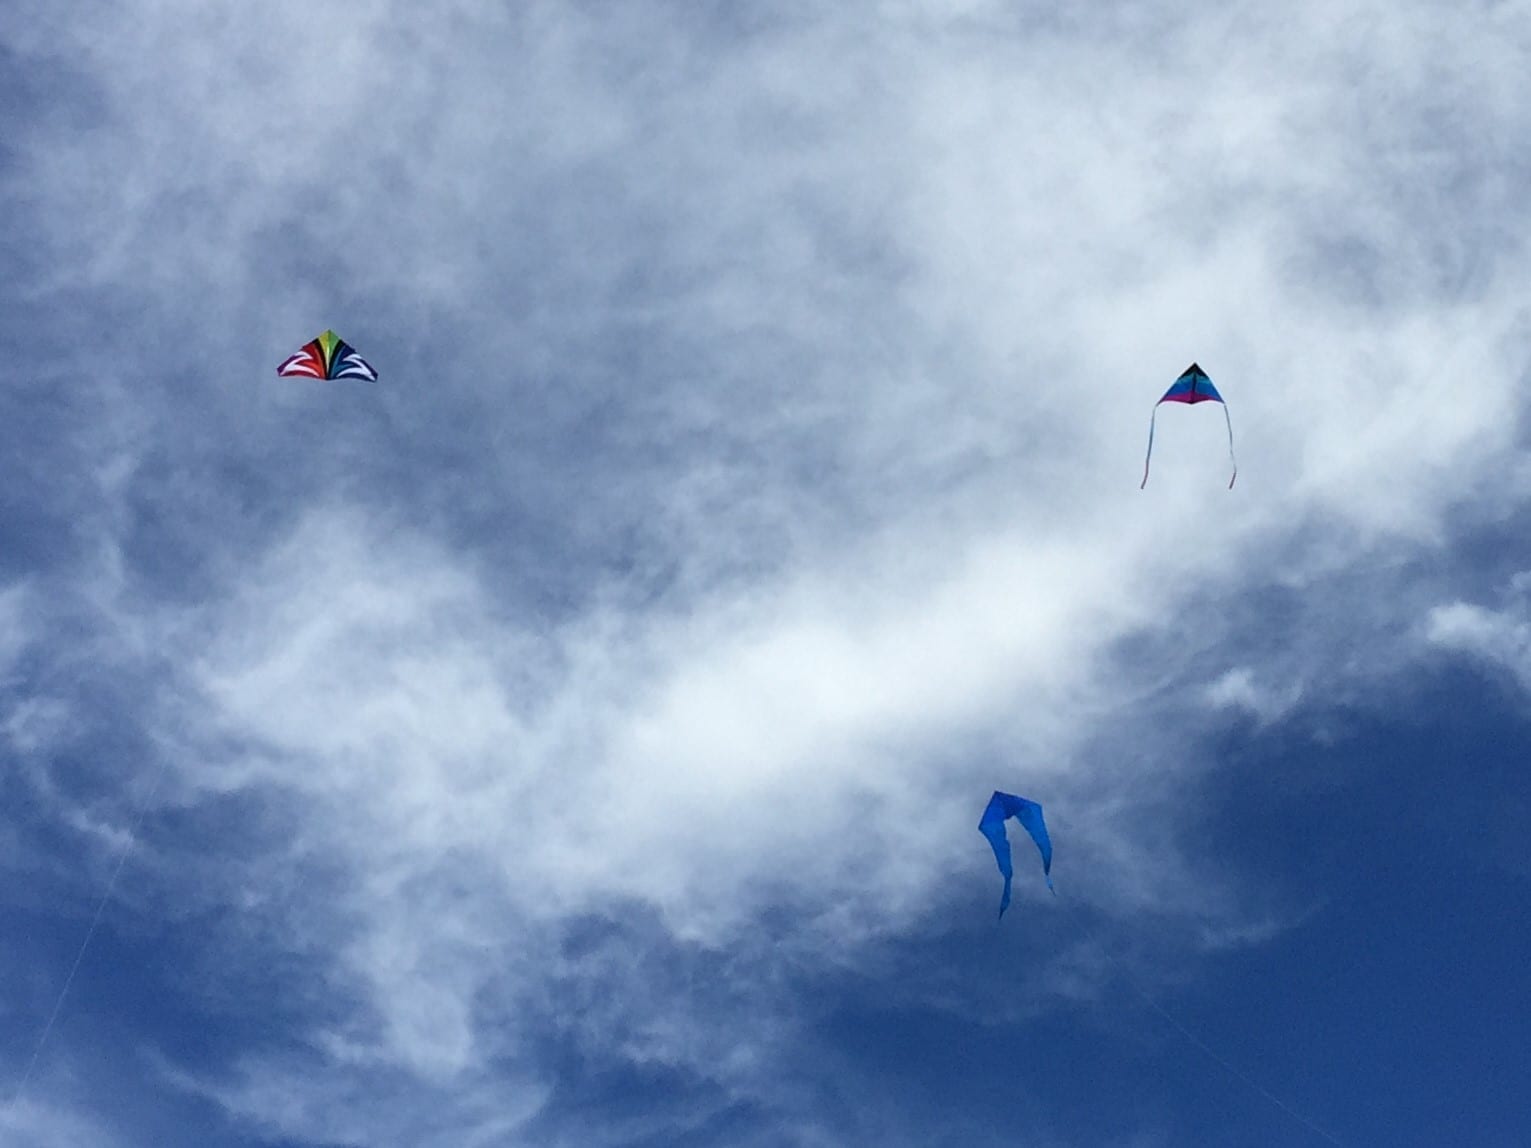 flying kites at kite festival